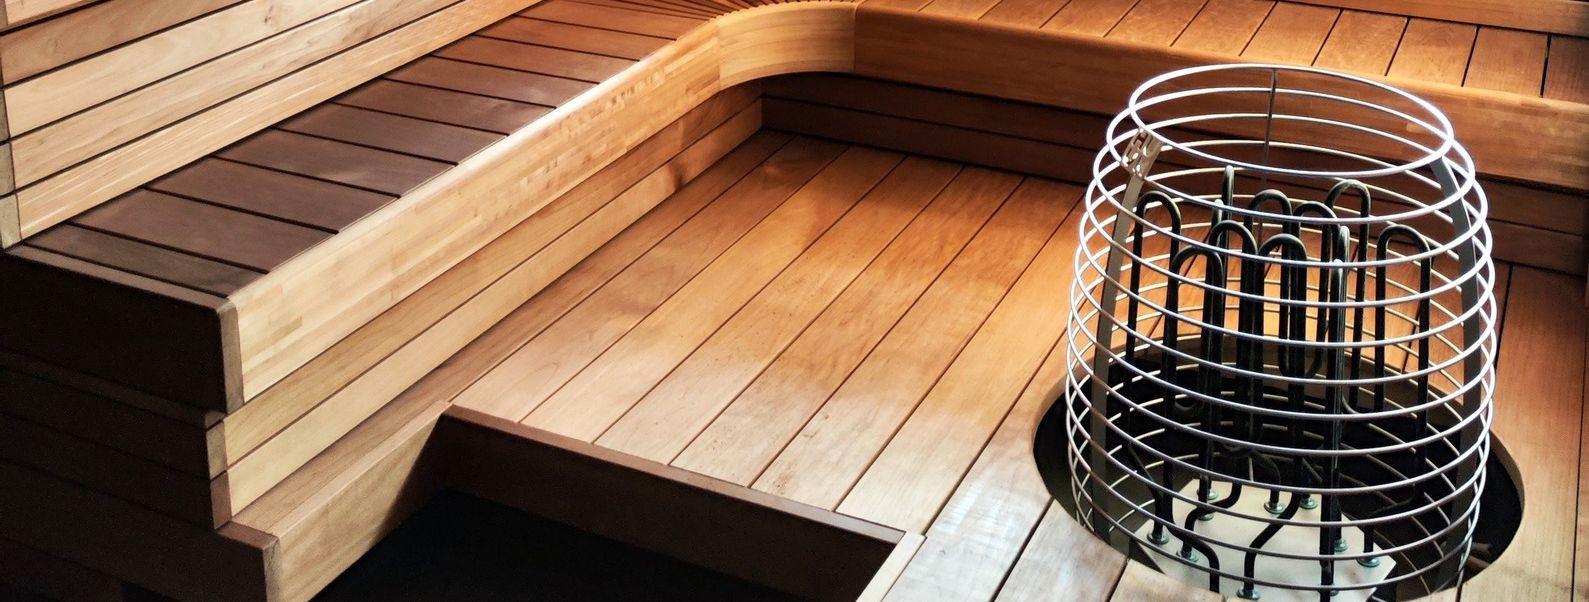 Sauna hooldamine on oluline selle pikaealisuse, ohutuse ja terapeutiliste eeliste tagamiseks. See juhend juhatab teid läbi oluliste sammude ja parimate tavadega